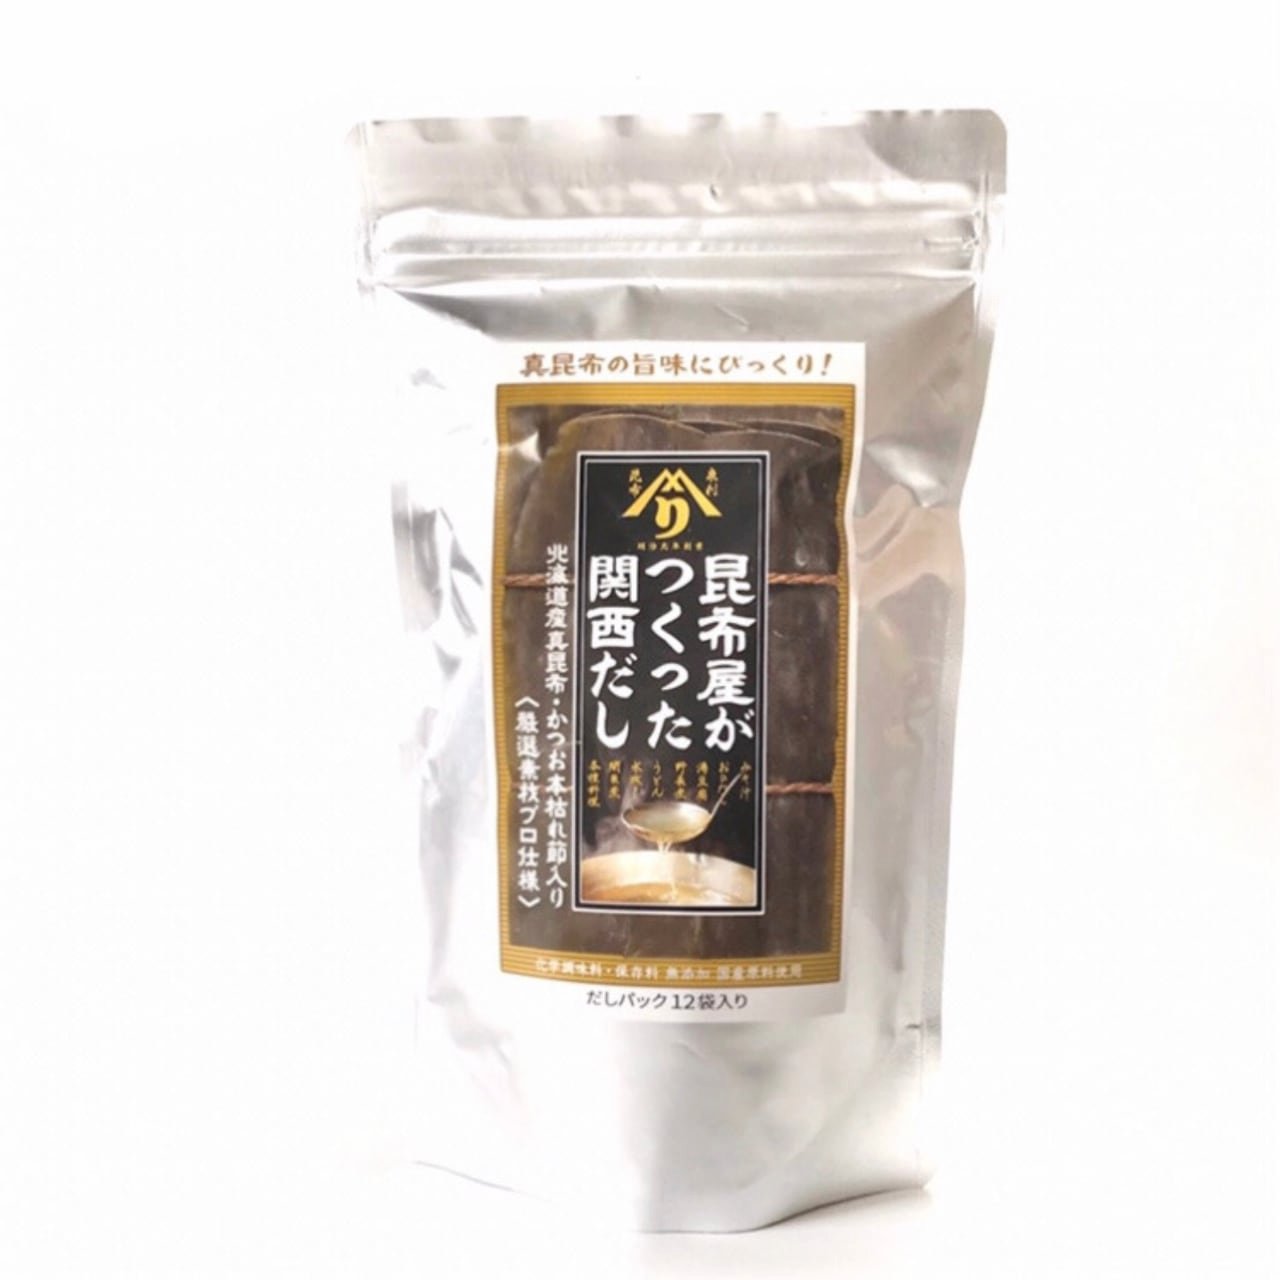 Izuri Additive-Free Kombu Dashi Soup Stock Kansai-Style 8g x 12 Packets